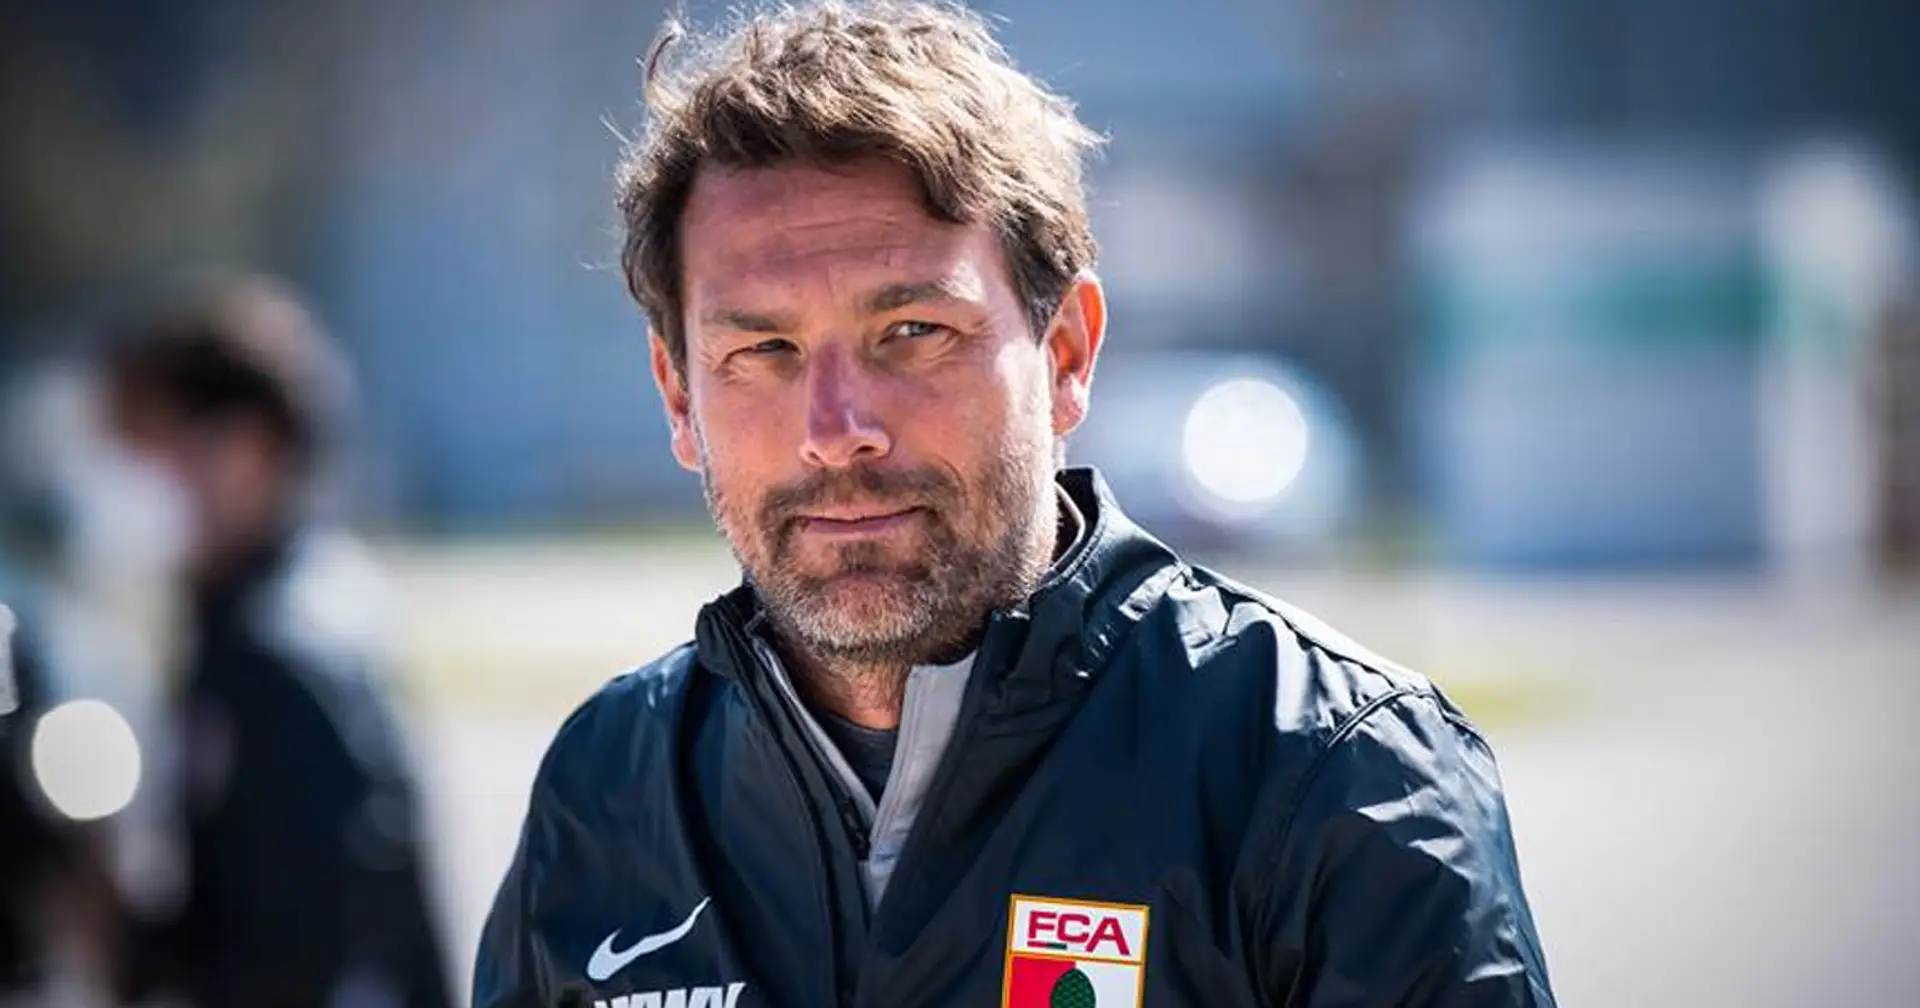 Augsburg-Trainer Weinzierl: "In Dortmund wollen wir uns gut präsentieren und punkten"